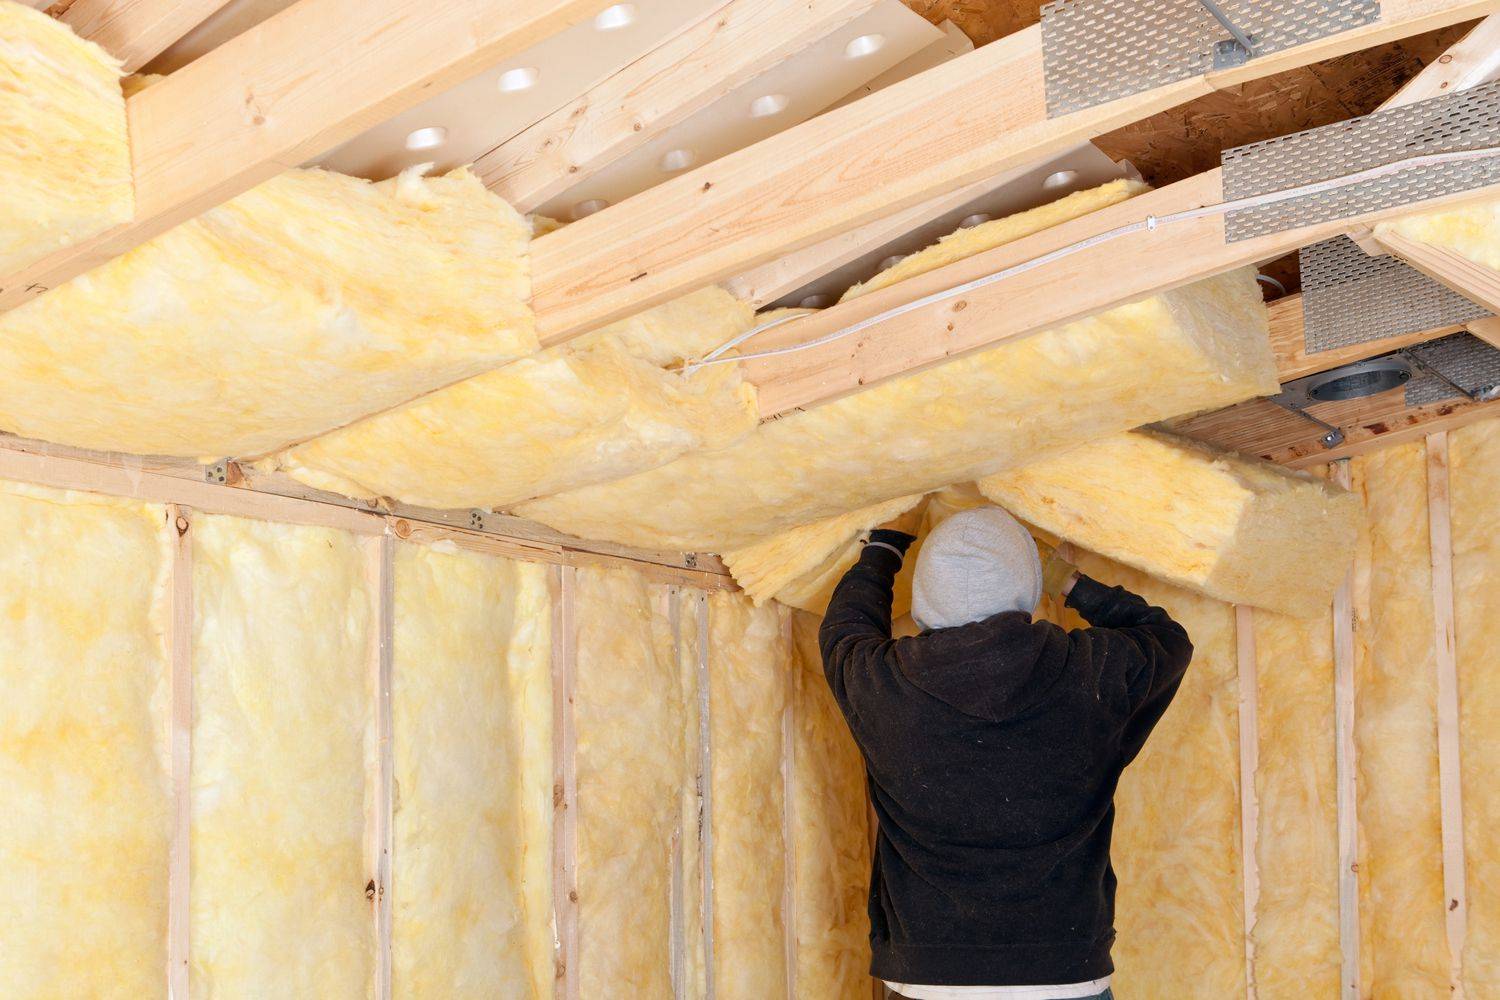 Утепление потолка в доме с холодной крышей: способы, минватой, пенопластом